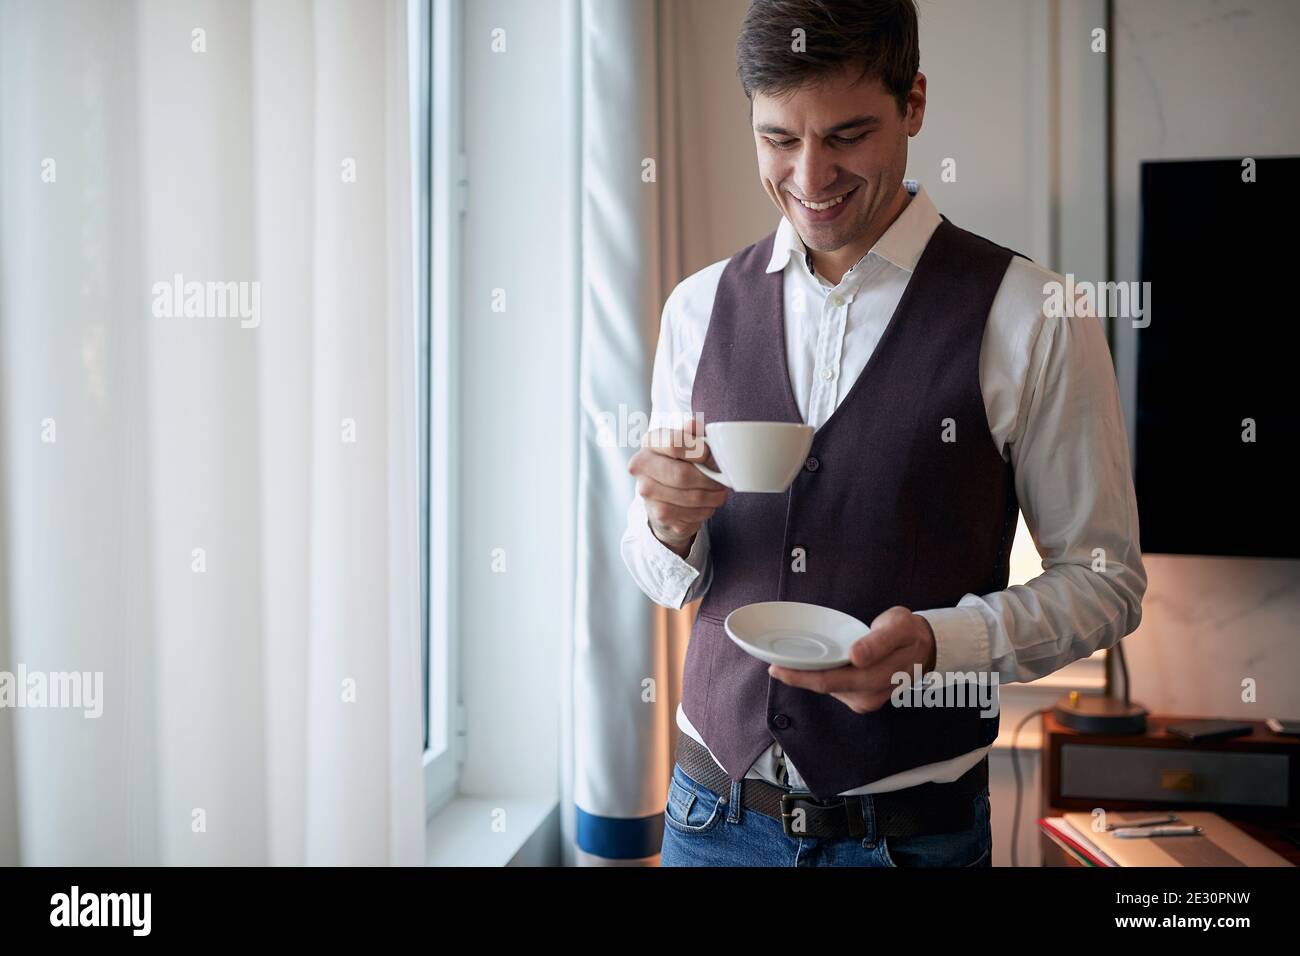 Un jeune homme lors d'un voyage d'affaires en prenant un café dans la chambre d'hôtel un beau matin. Hôtel, affaires, personnes Banque D'Images